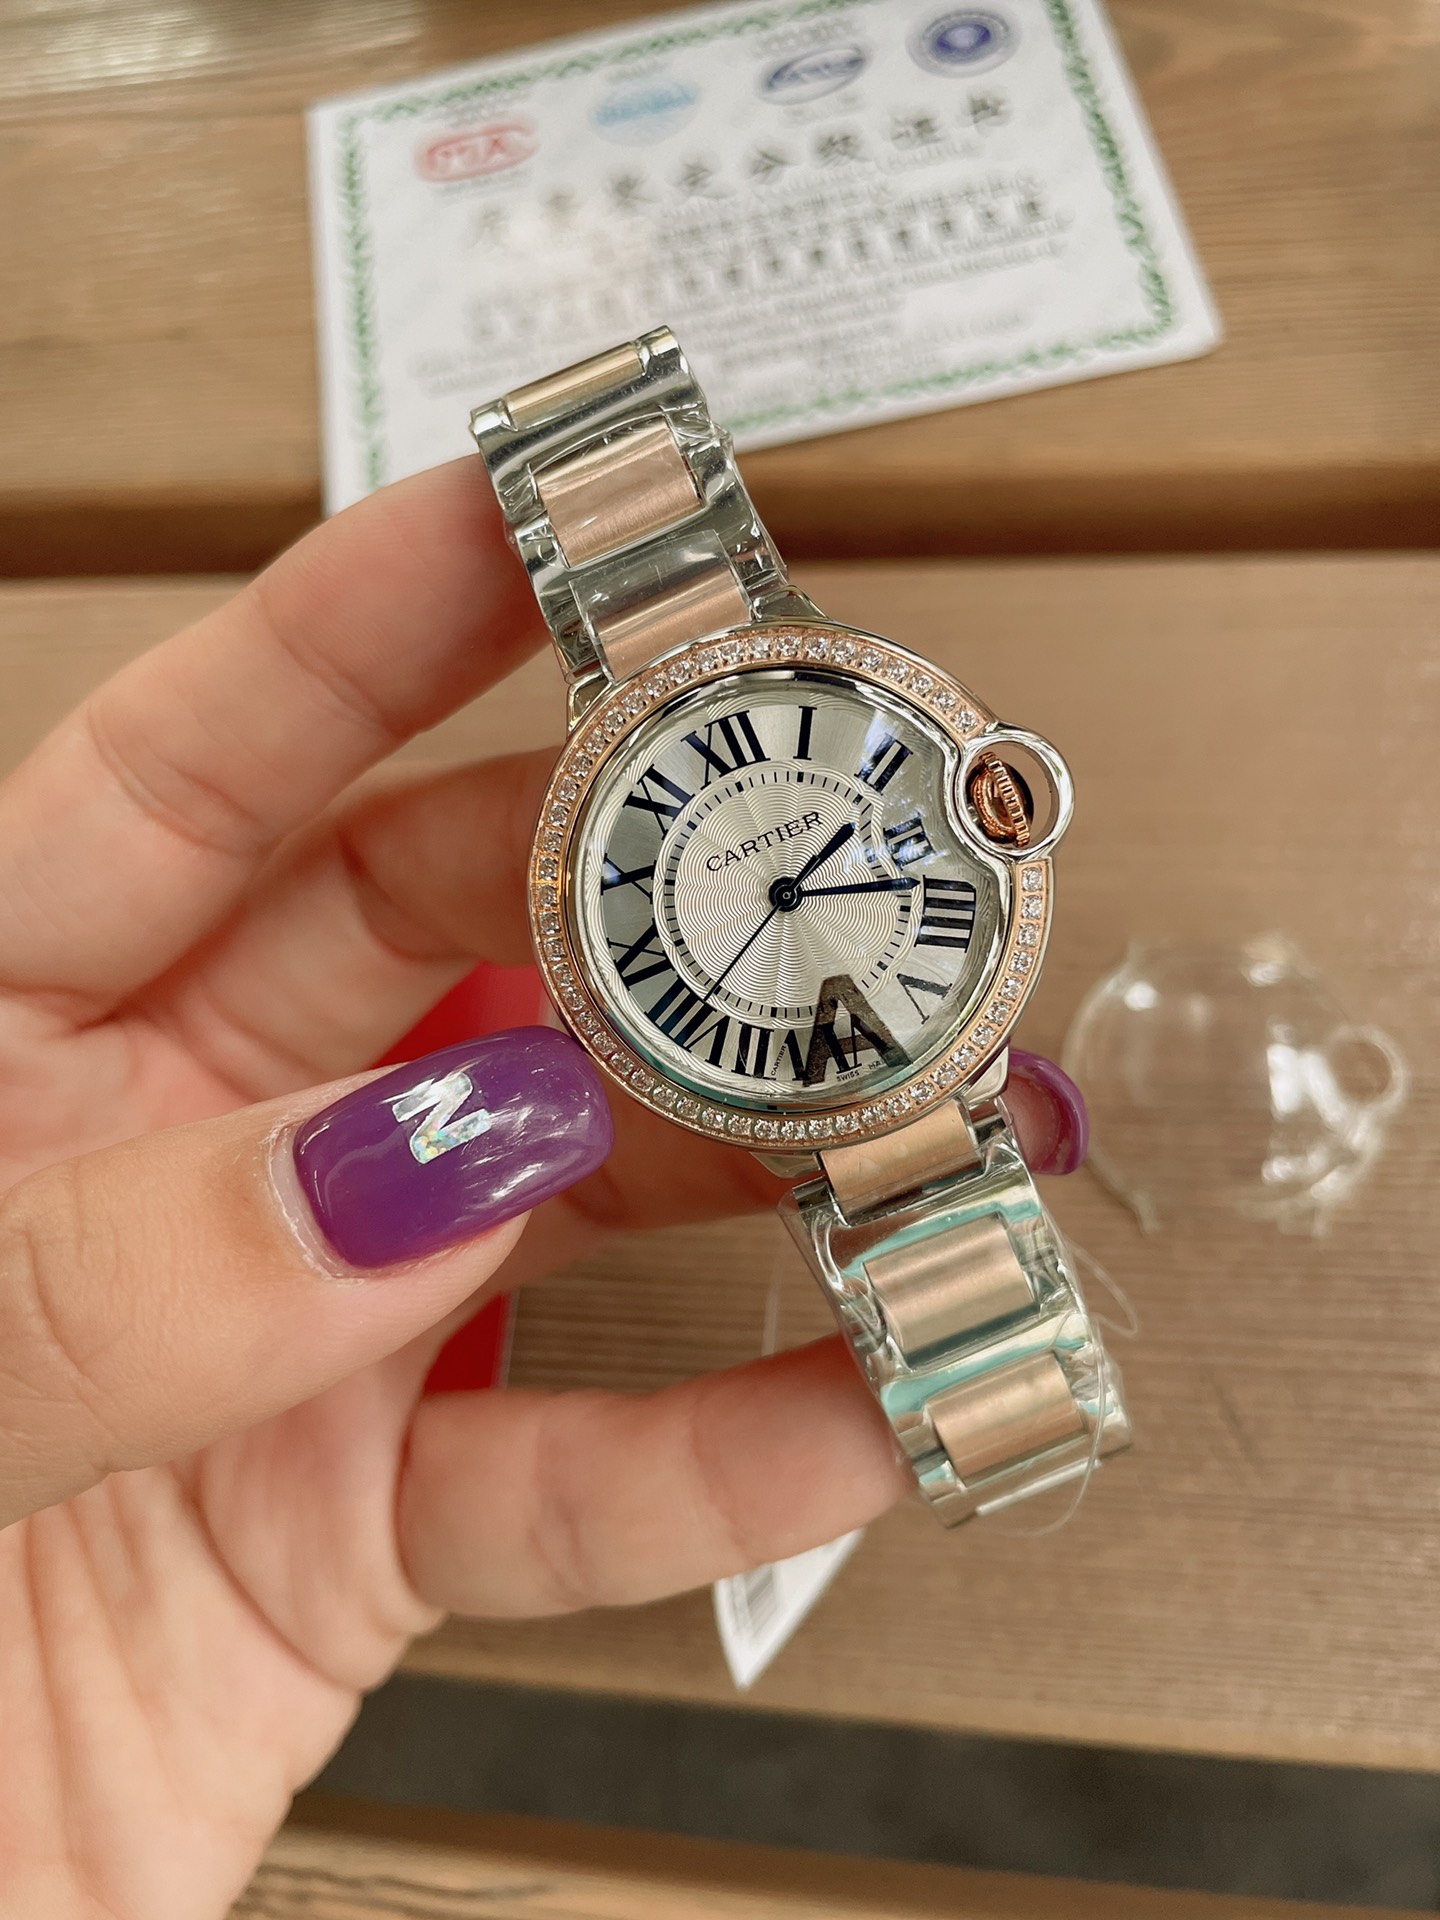 「ダイヤモンドある」CARTIERカルティエ 時計 中身コピー フランス 薄い腕時計 軽量 レディース 最新商品 キラキラ _7